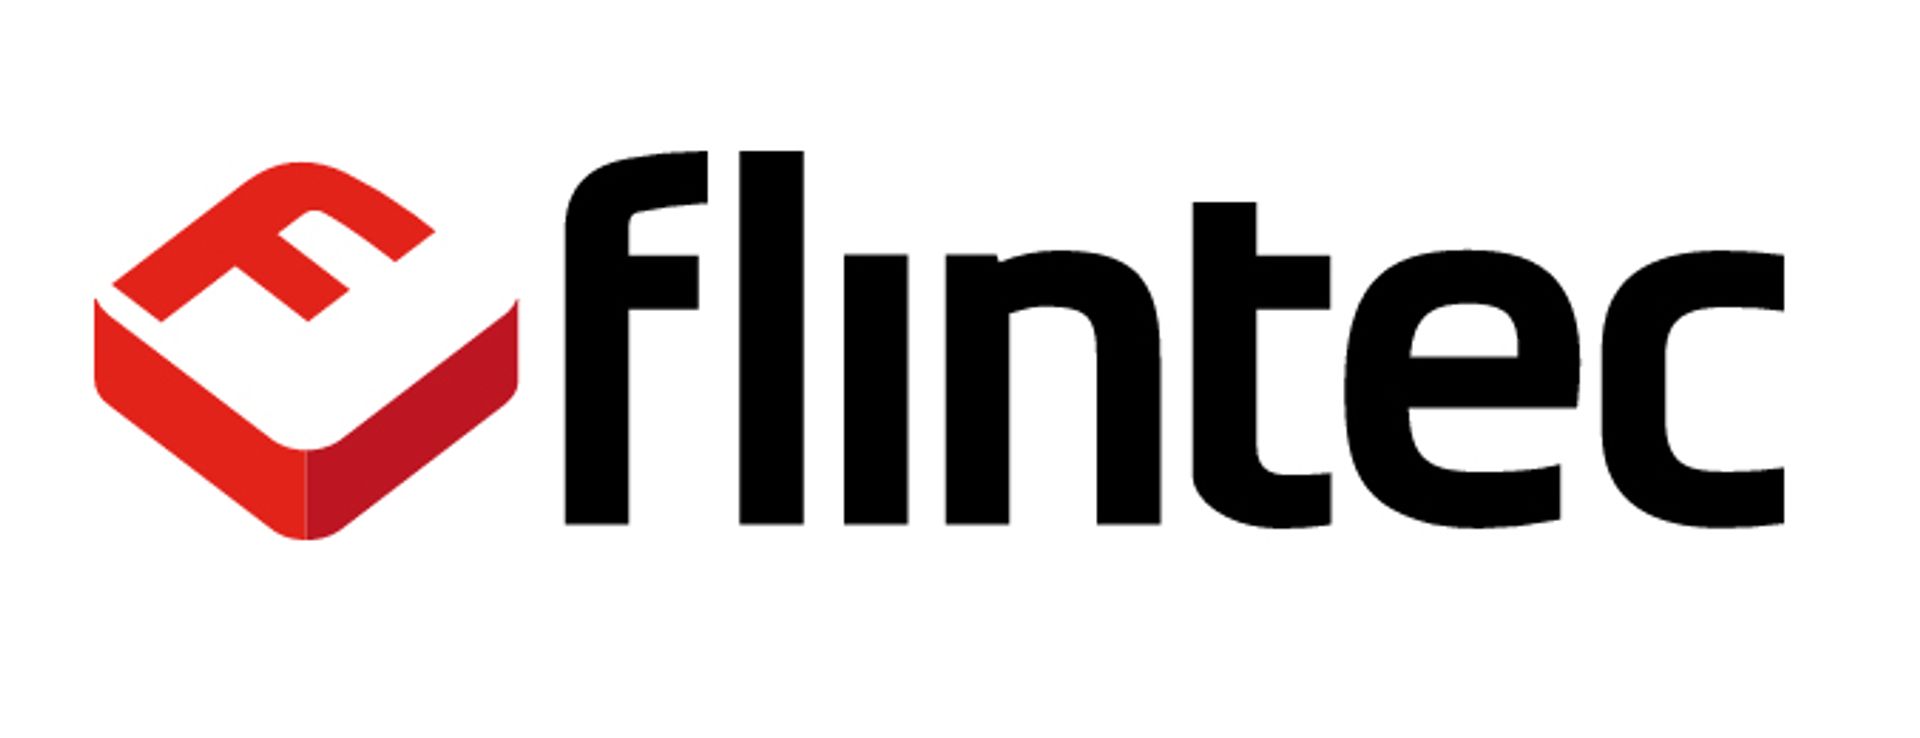 Flintec Inc